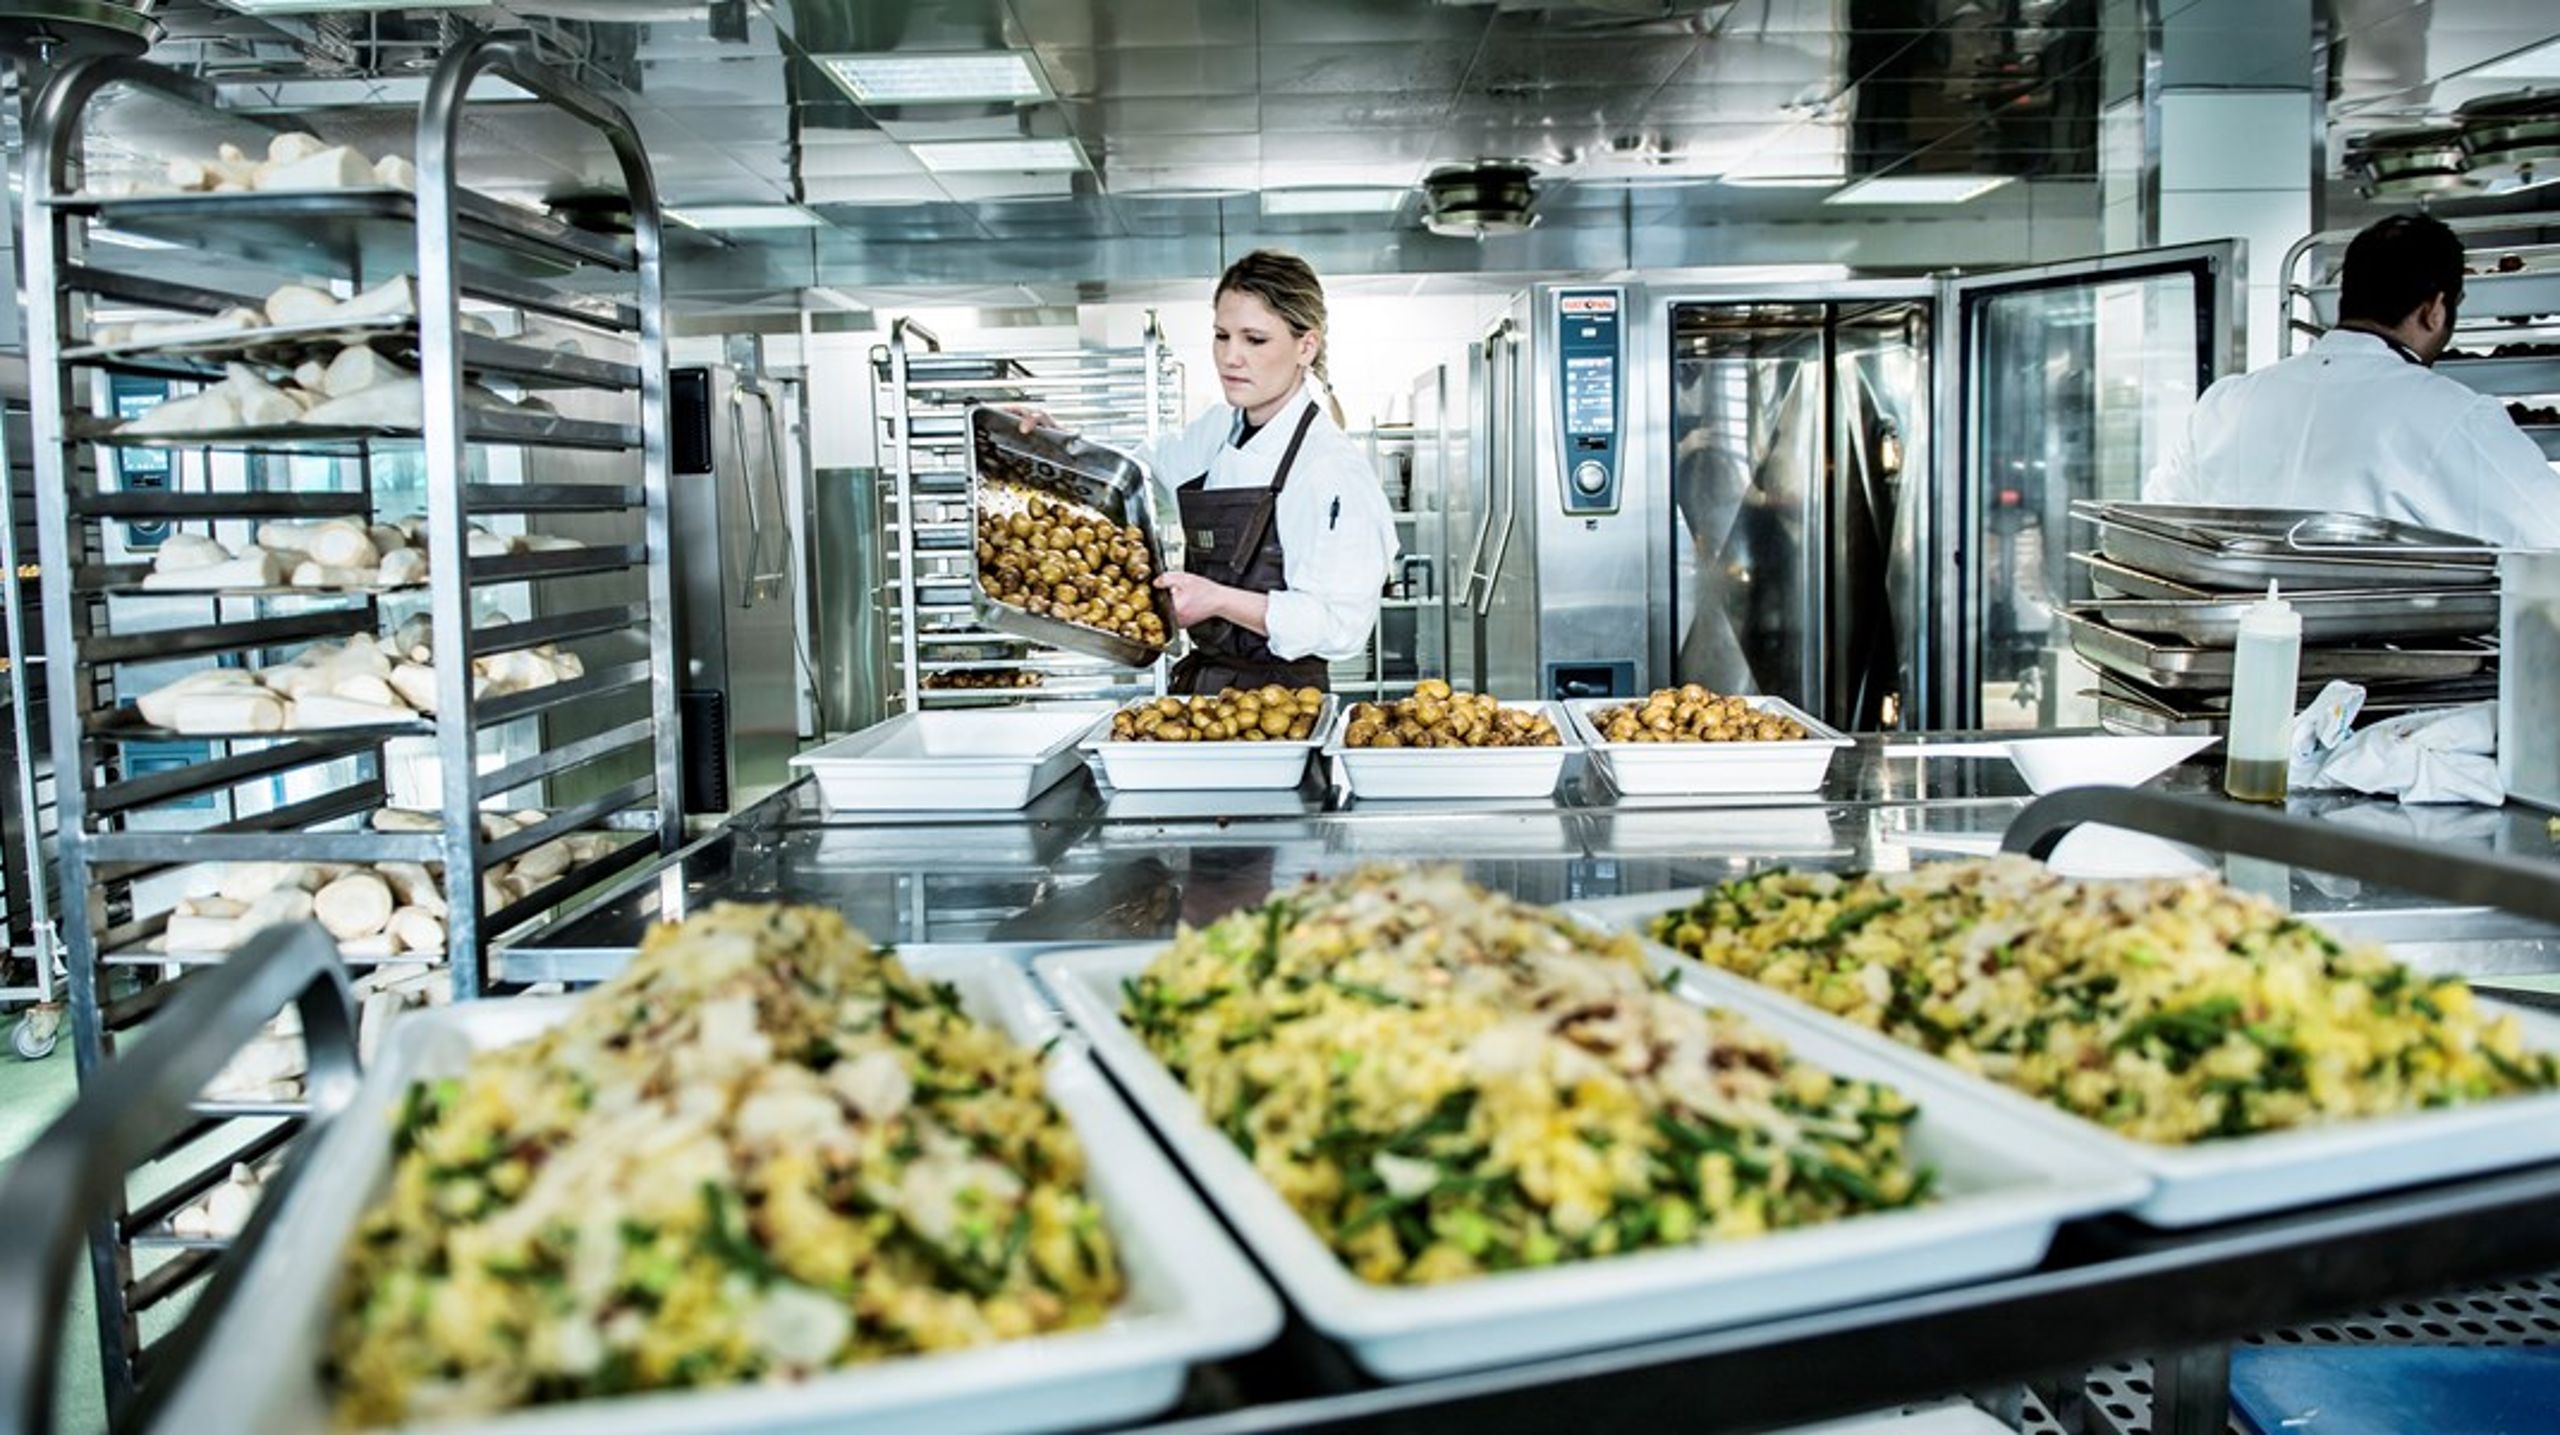 Det hele begynder i køkkenerne. Det er dem, der skal bestille de varer, som de offentlige indkøbere har udvalgt. Men mange køkkenchefer har mistet fornemmelsen for god husmorøkonomi, skriver Line Rise Nielsen.